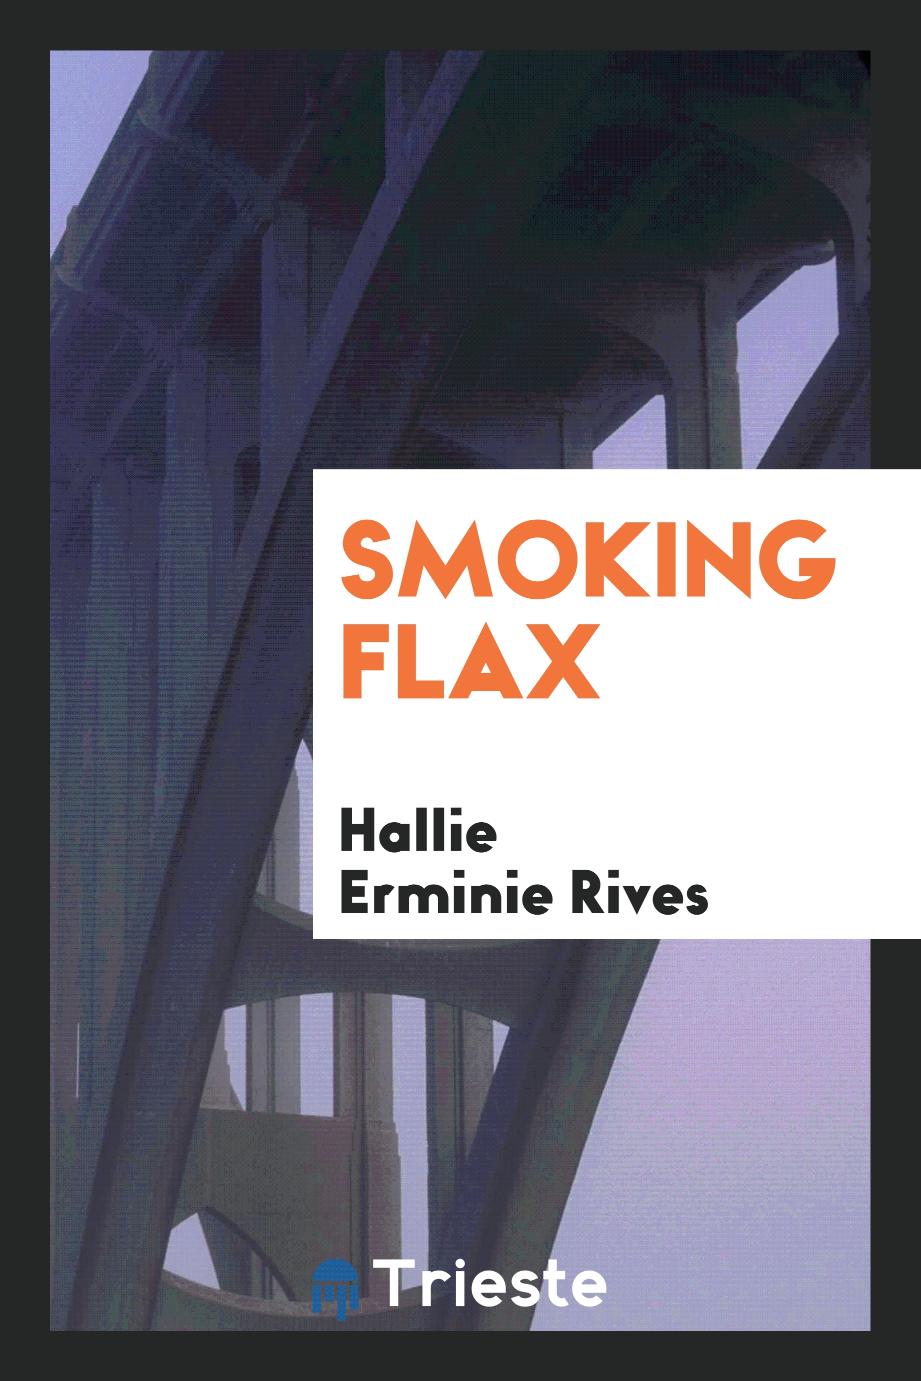 Smoking flax